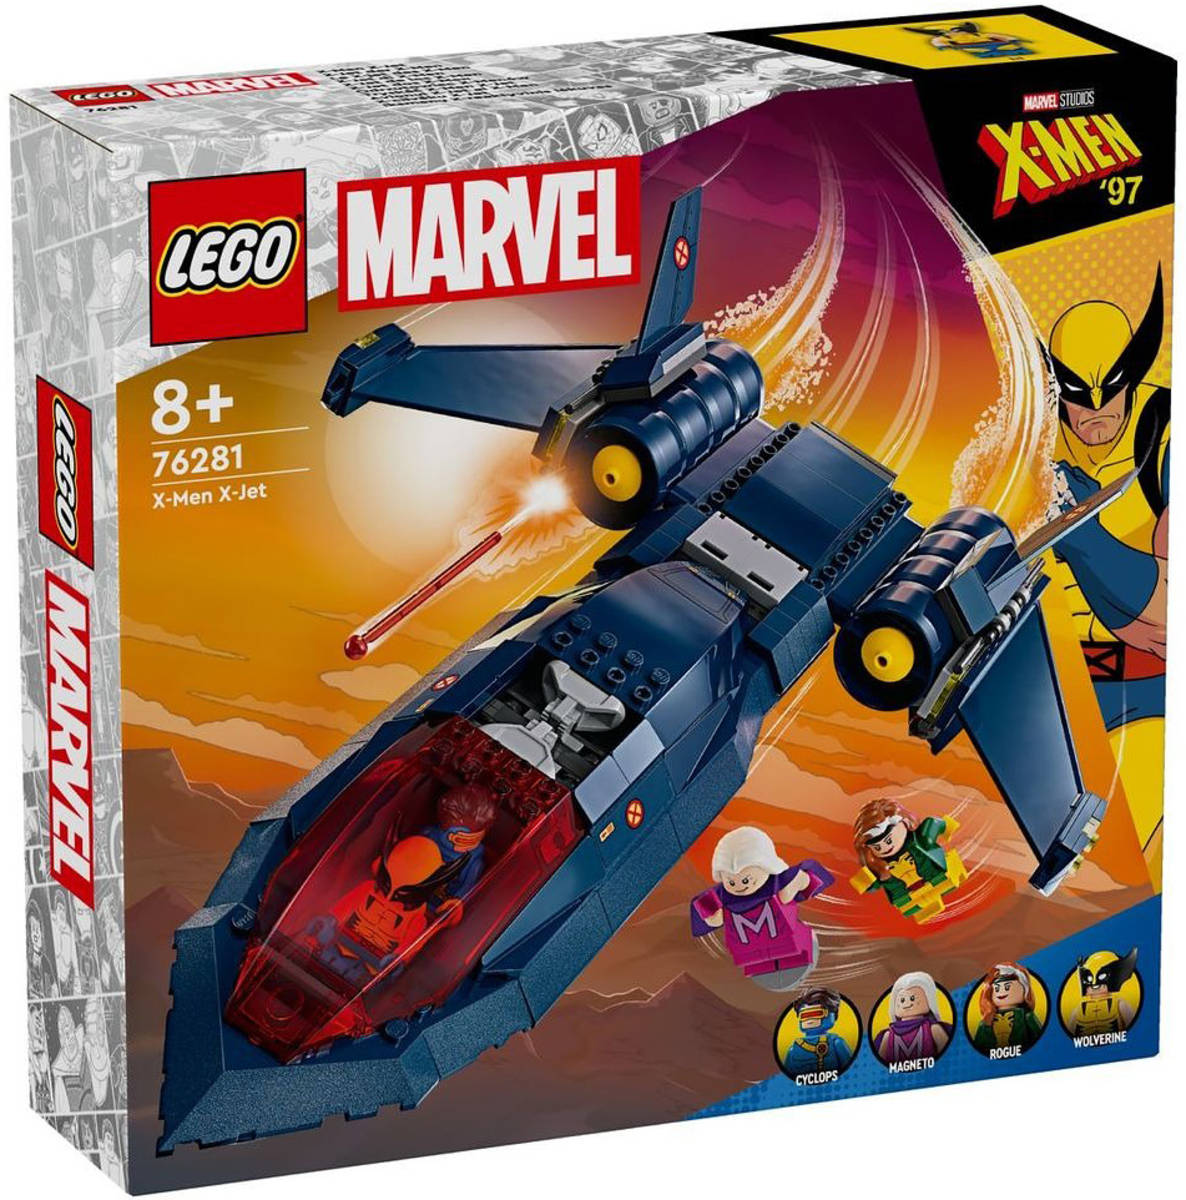 LEGO MARVEL Tryskáè X-Men X-Jet 76281 STAVEBNICE - zvìtšit obrázek